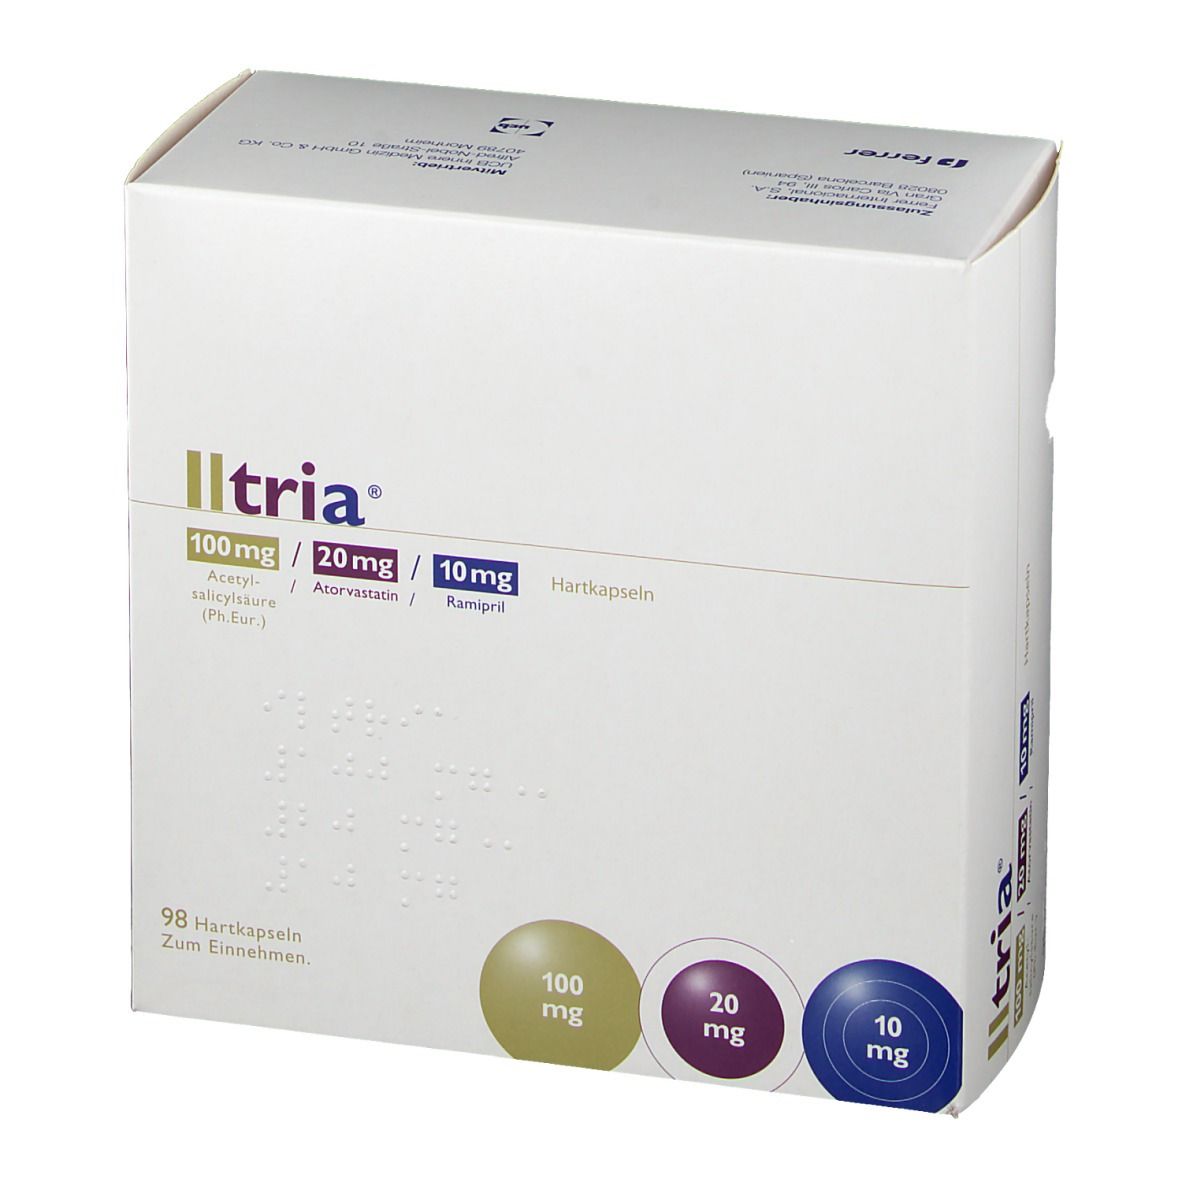 Iltria® 100 mg/20 mg/10 mg